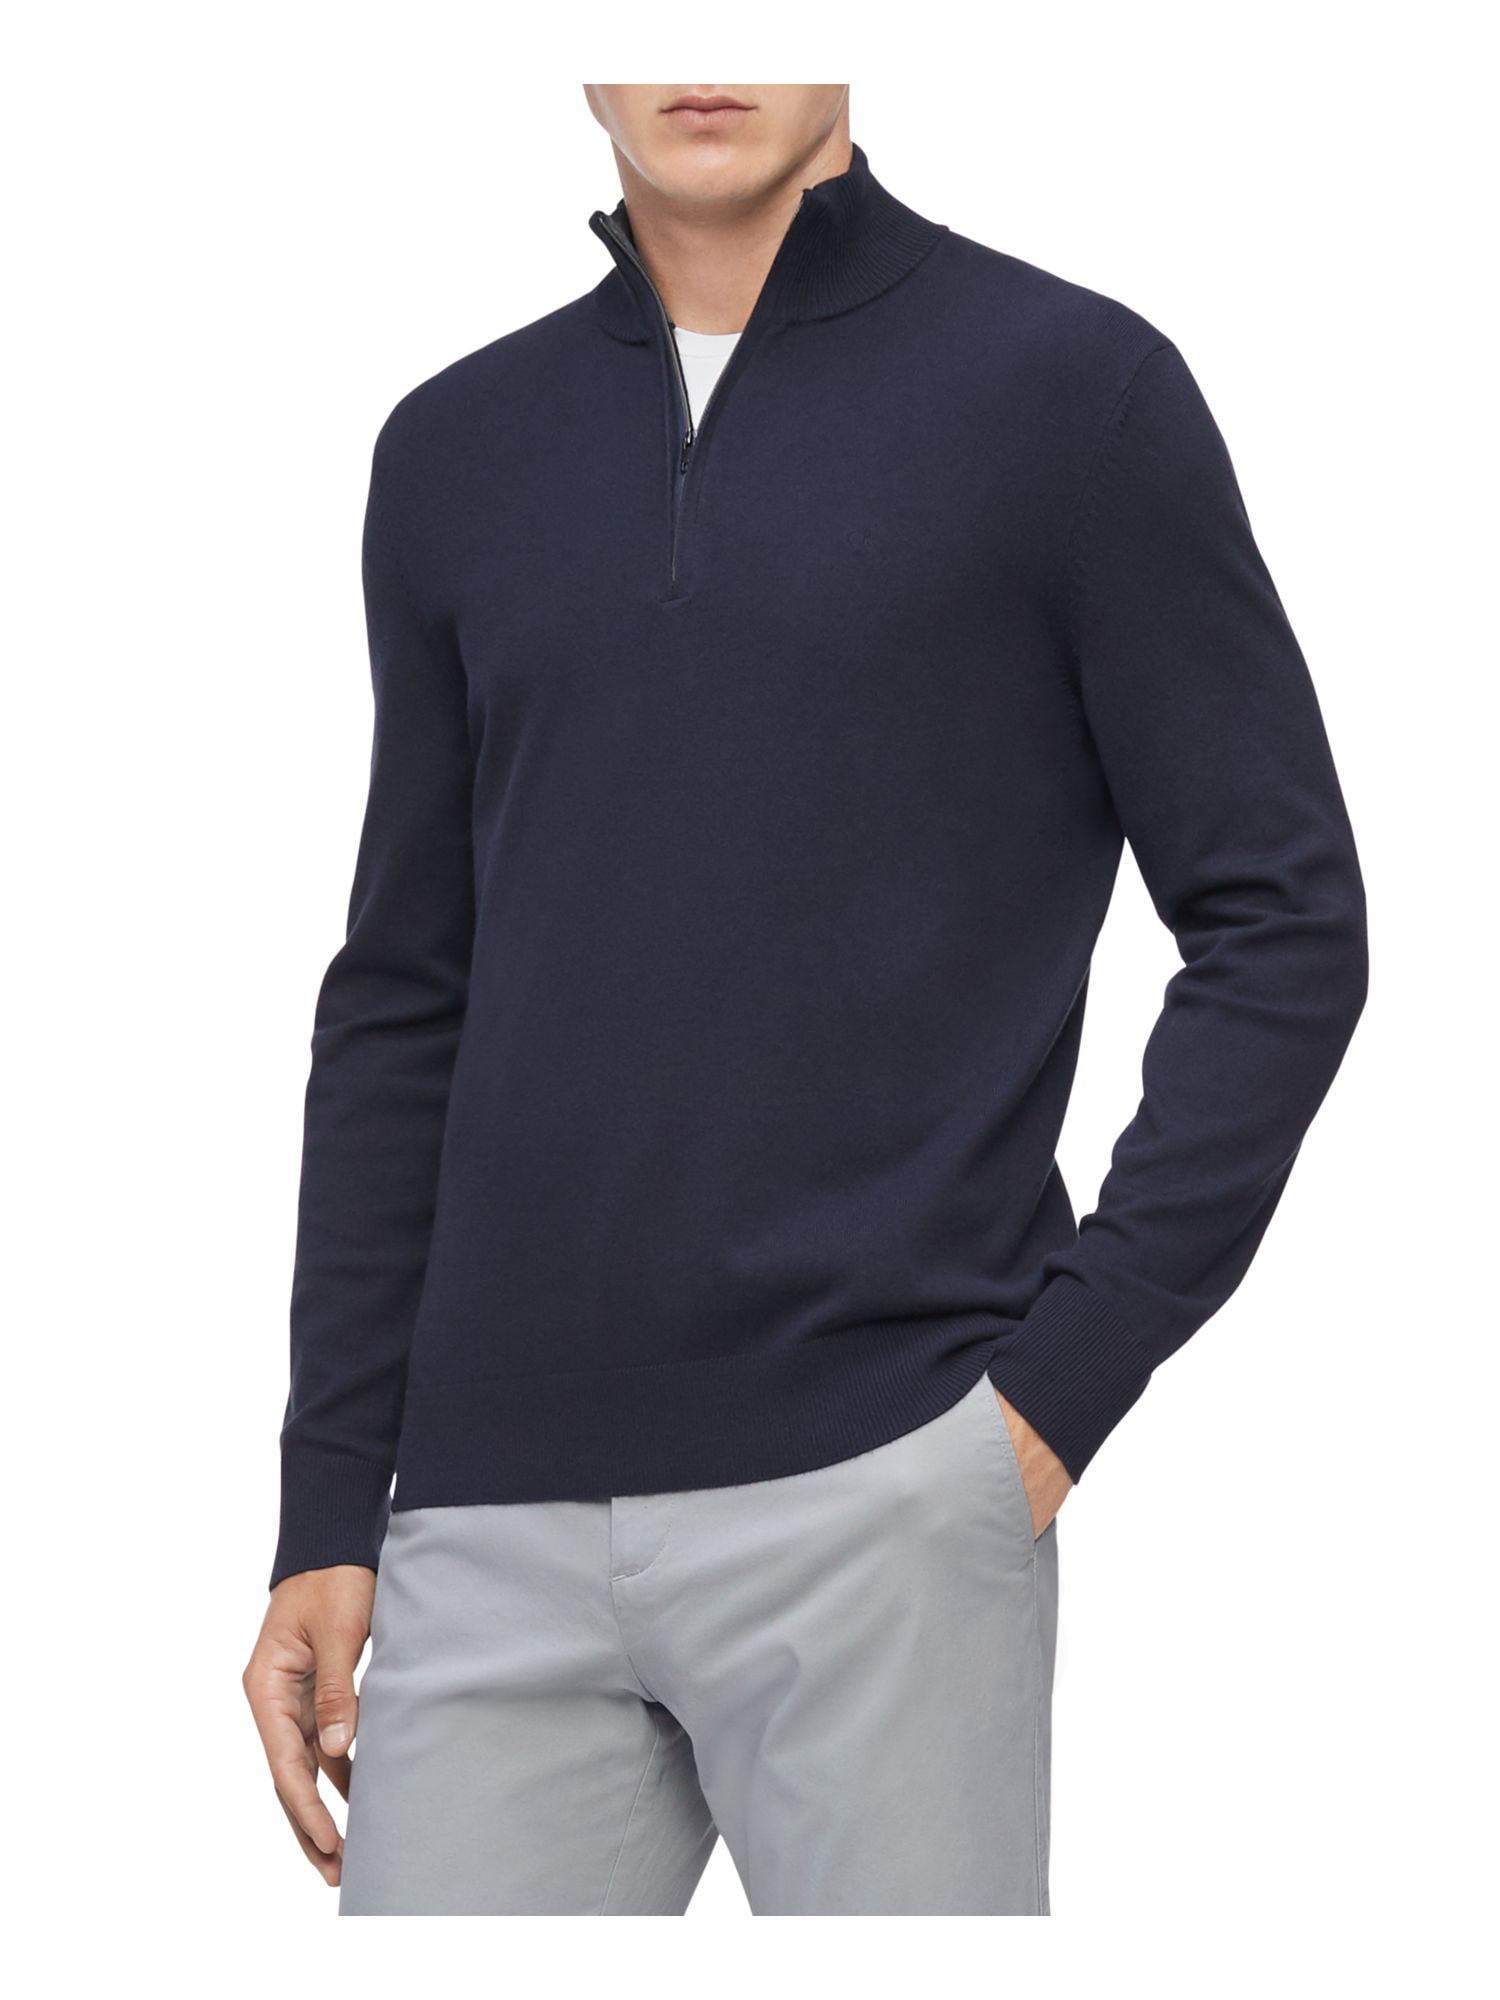 KLEIN Sweater Sleeve Lightweight L Pullover Collared Long Mens CALVIN Quarter-Zip Blue